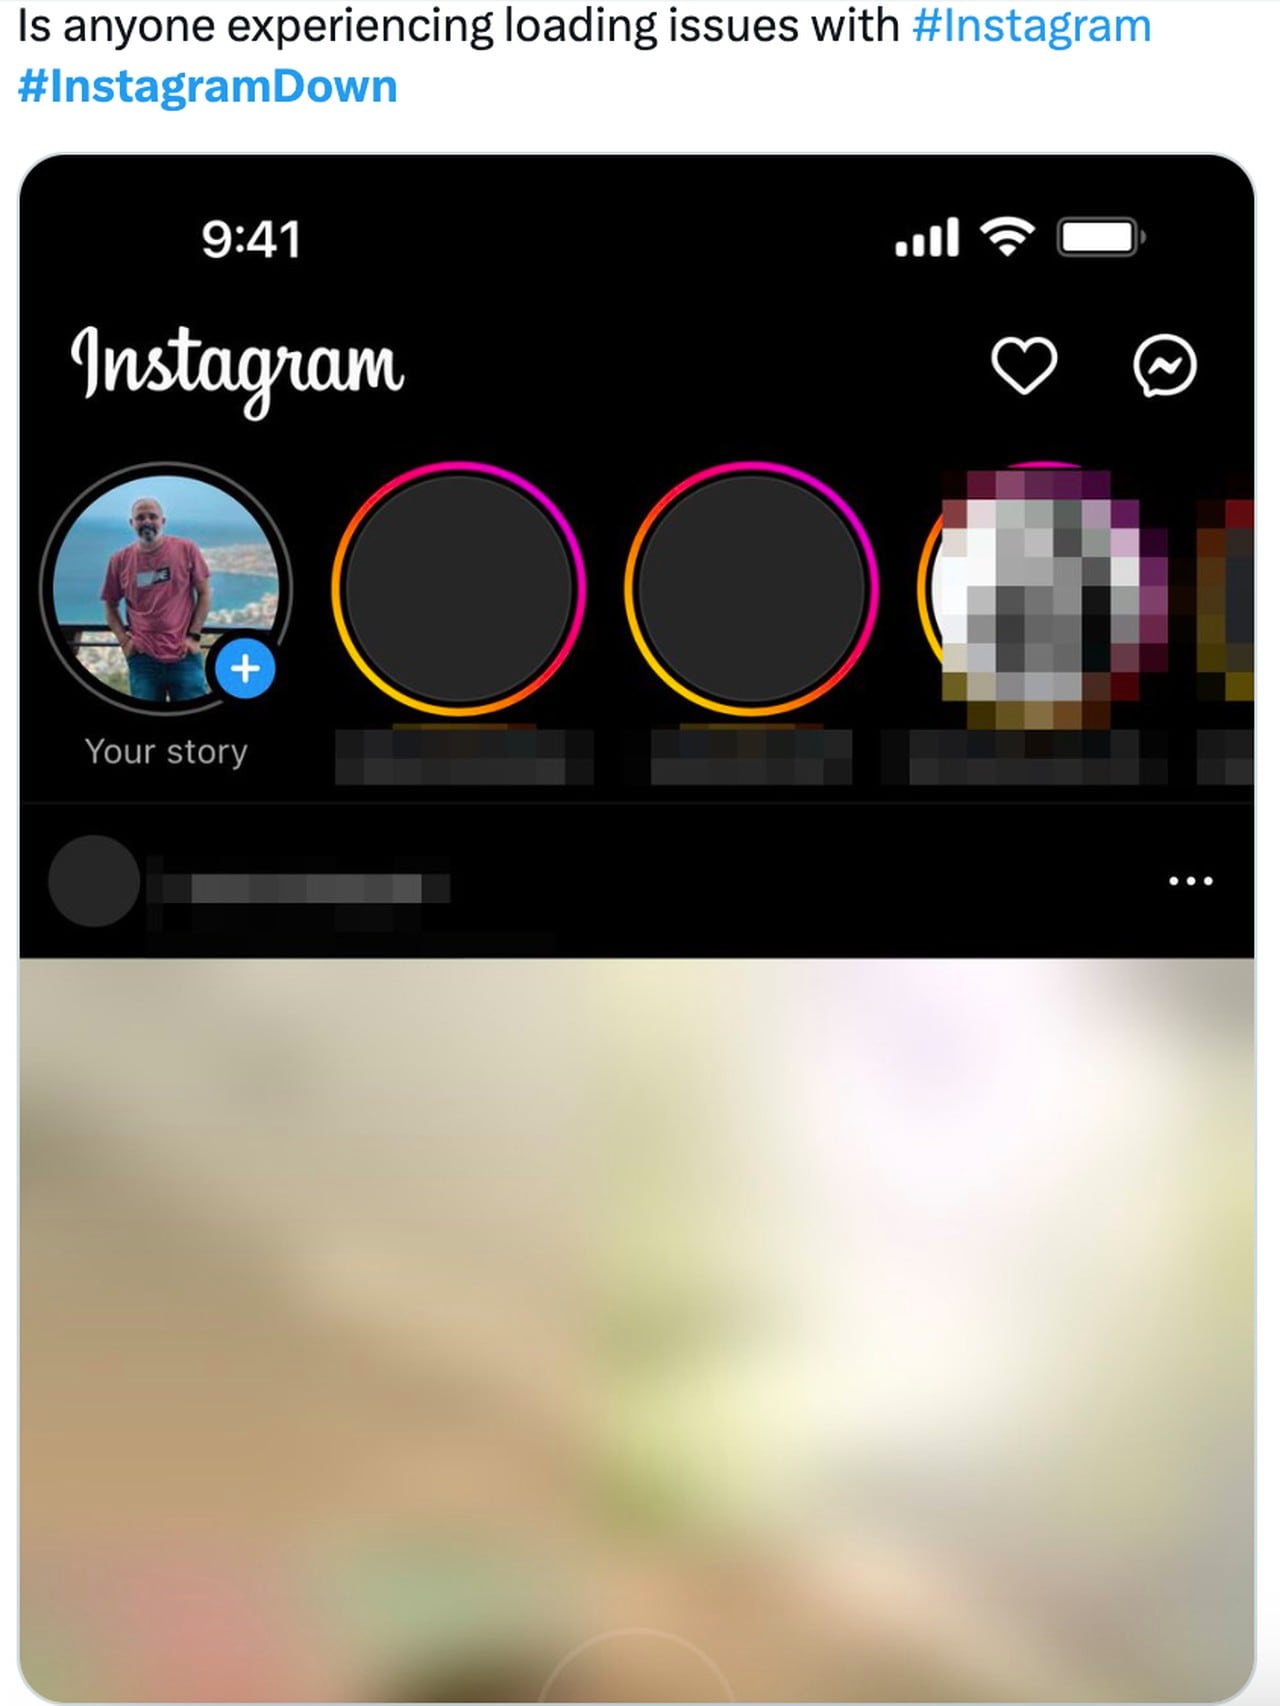 Fallas en Instagram hoy; usuarios reportan problemas en la versión móvil